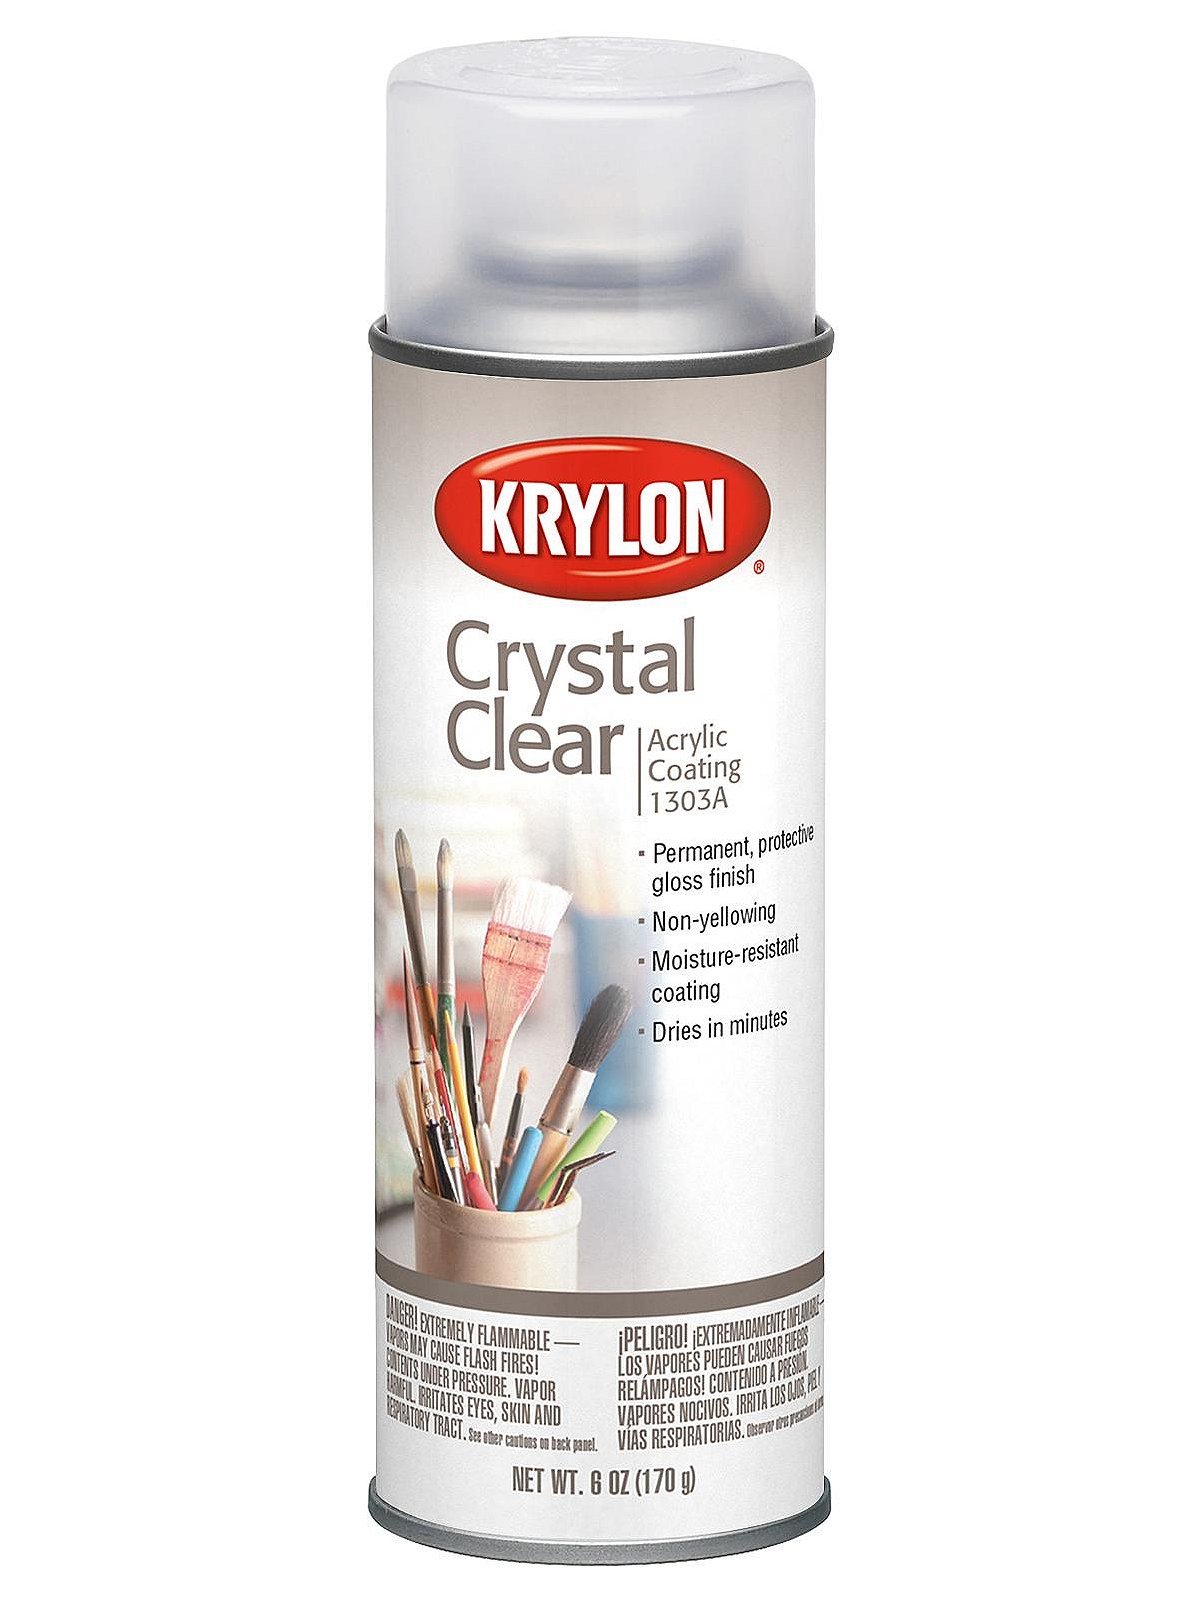 RARE Vintage 1960s Krylon Borden # 1303 Crystal Clear Acrylic